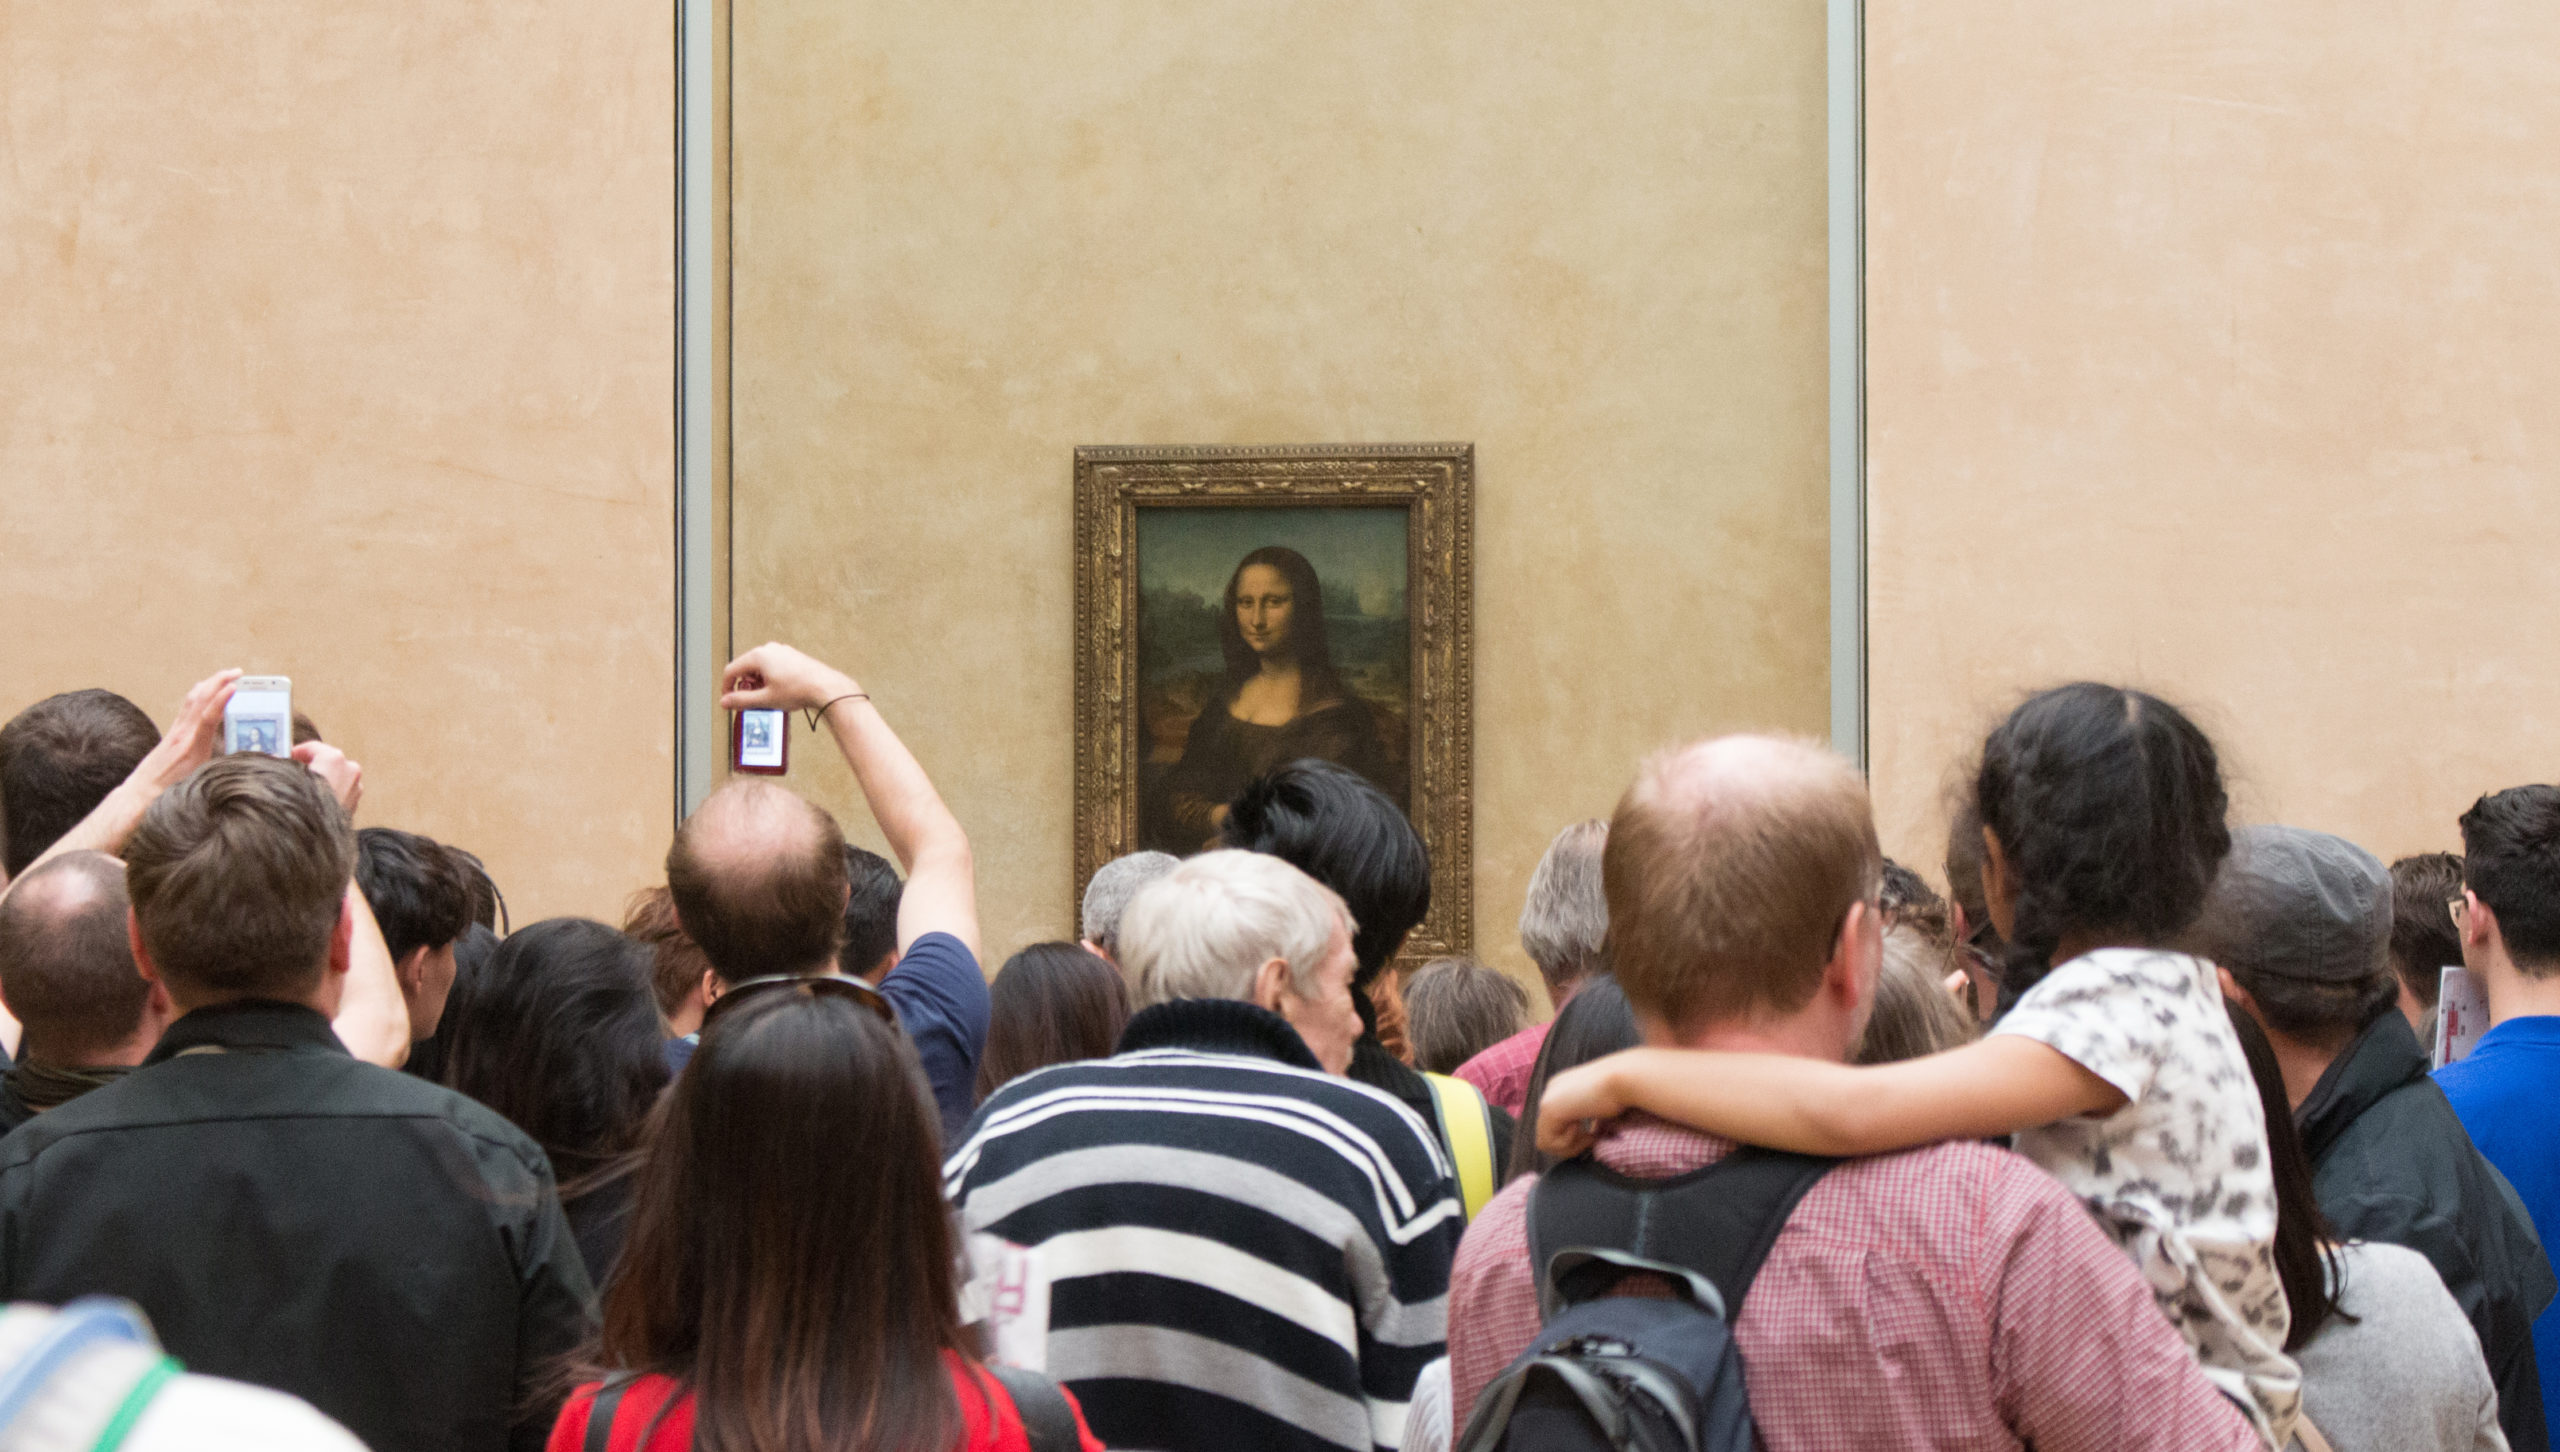 Monalisa Ke 3x Video - Mona Lisa (article) | Leonardo da Vinci | Khan Academy